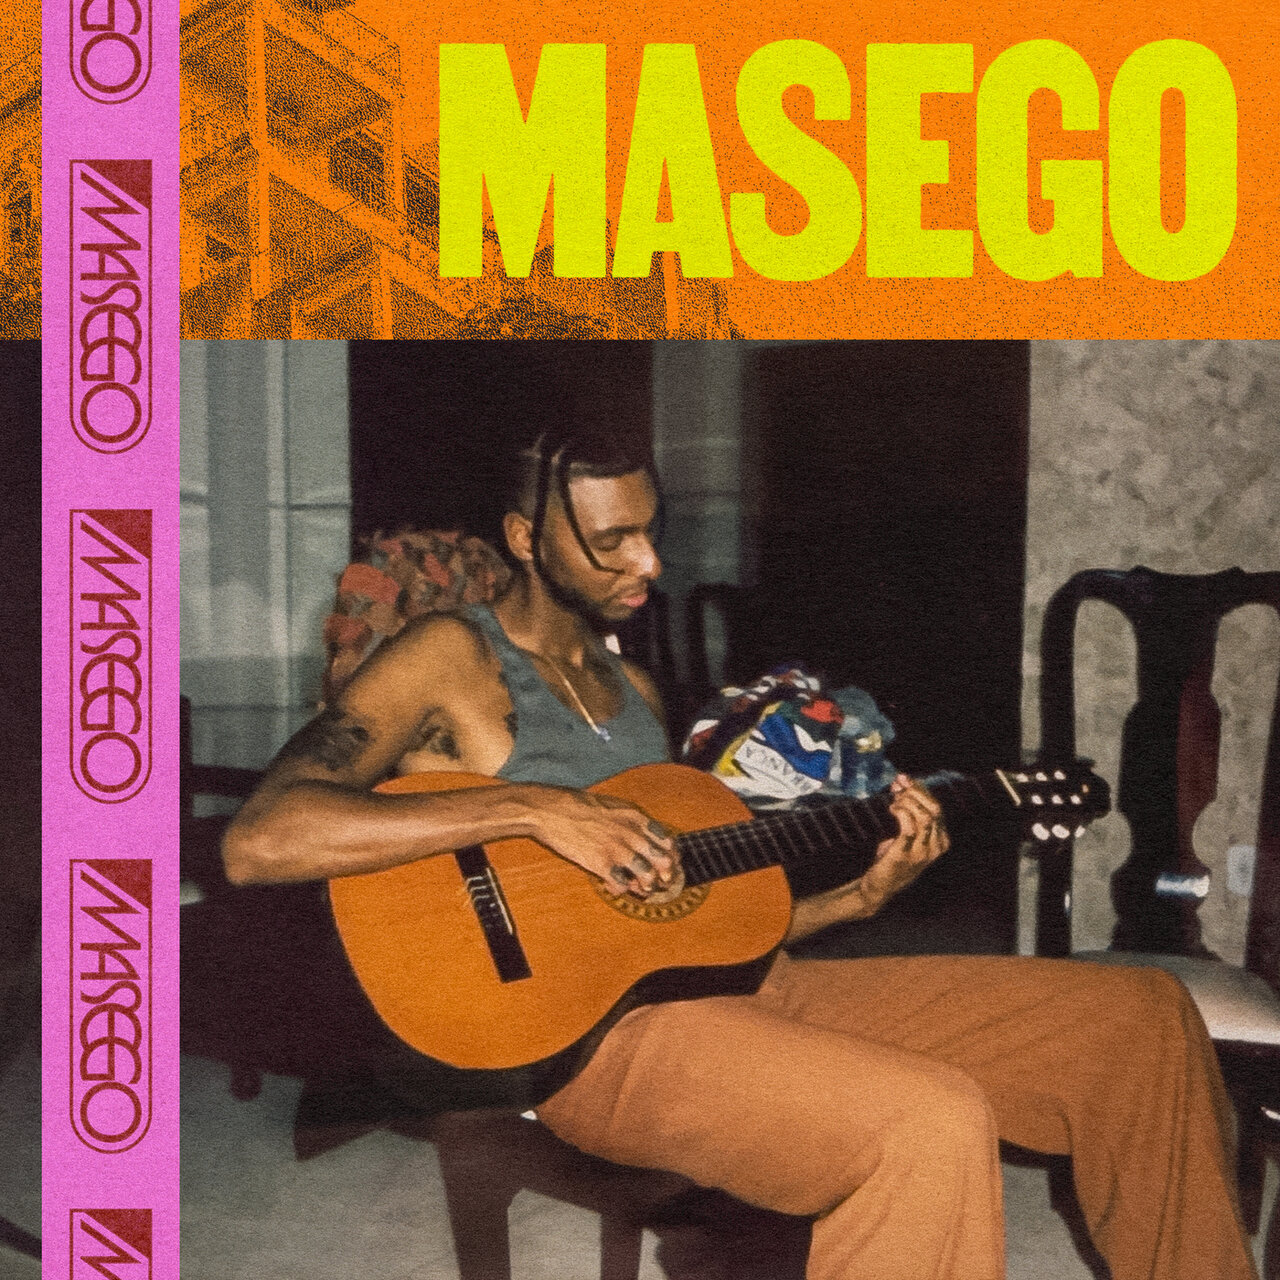 masego masego